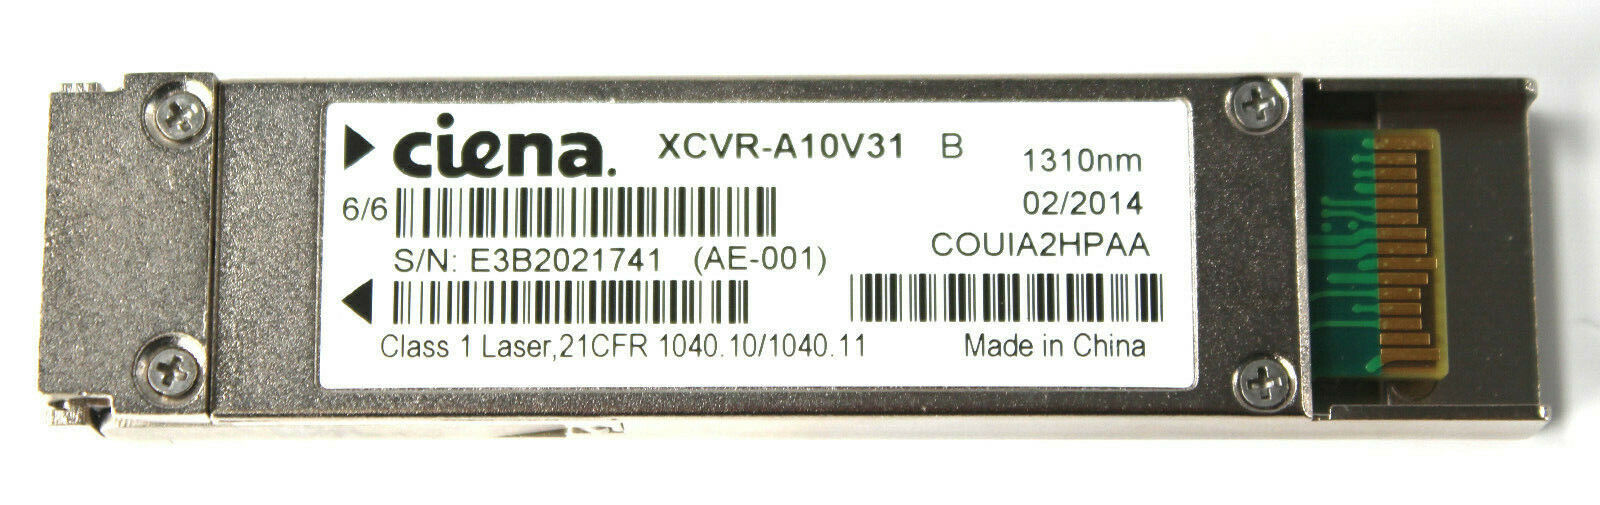 Ciena XCVR-A10V31 B COUIA2HPAA 1310nm 10GB-LR Transceiver